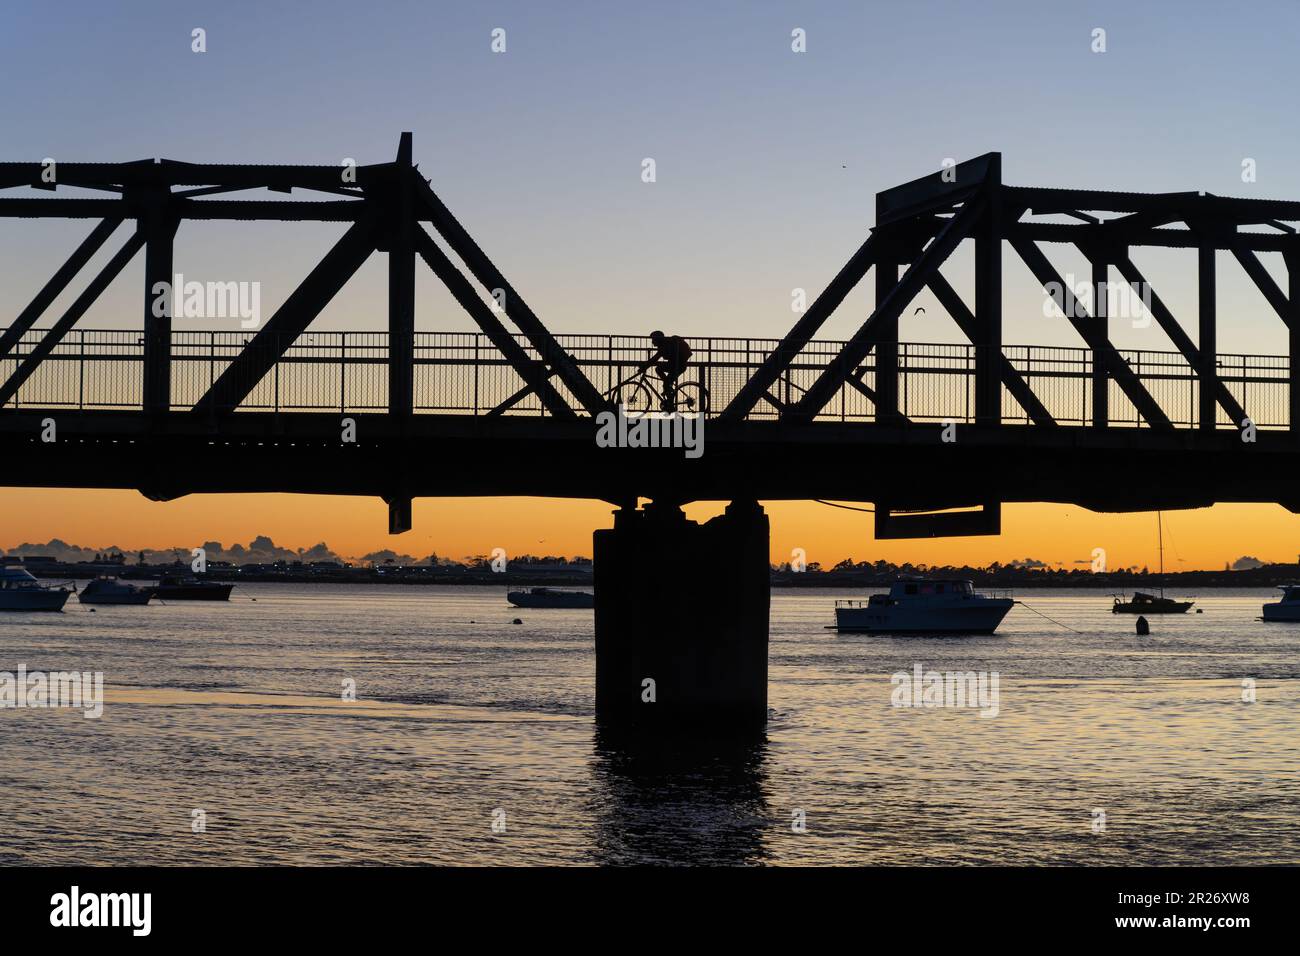 En silueta irreconocible ciclista retroiluminado en el amanecer montando a través del puente del ferrocarril de Tauranga, Nueva Zelanda. Foto de stock